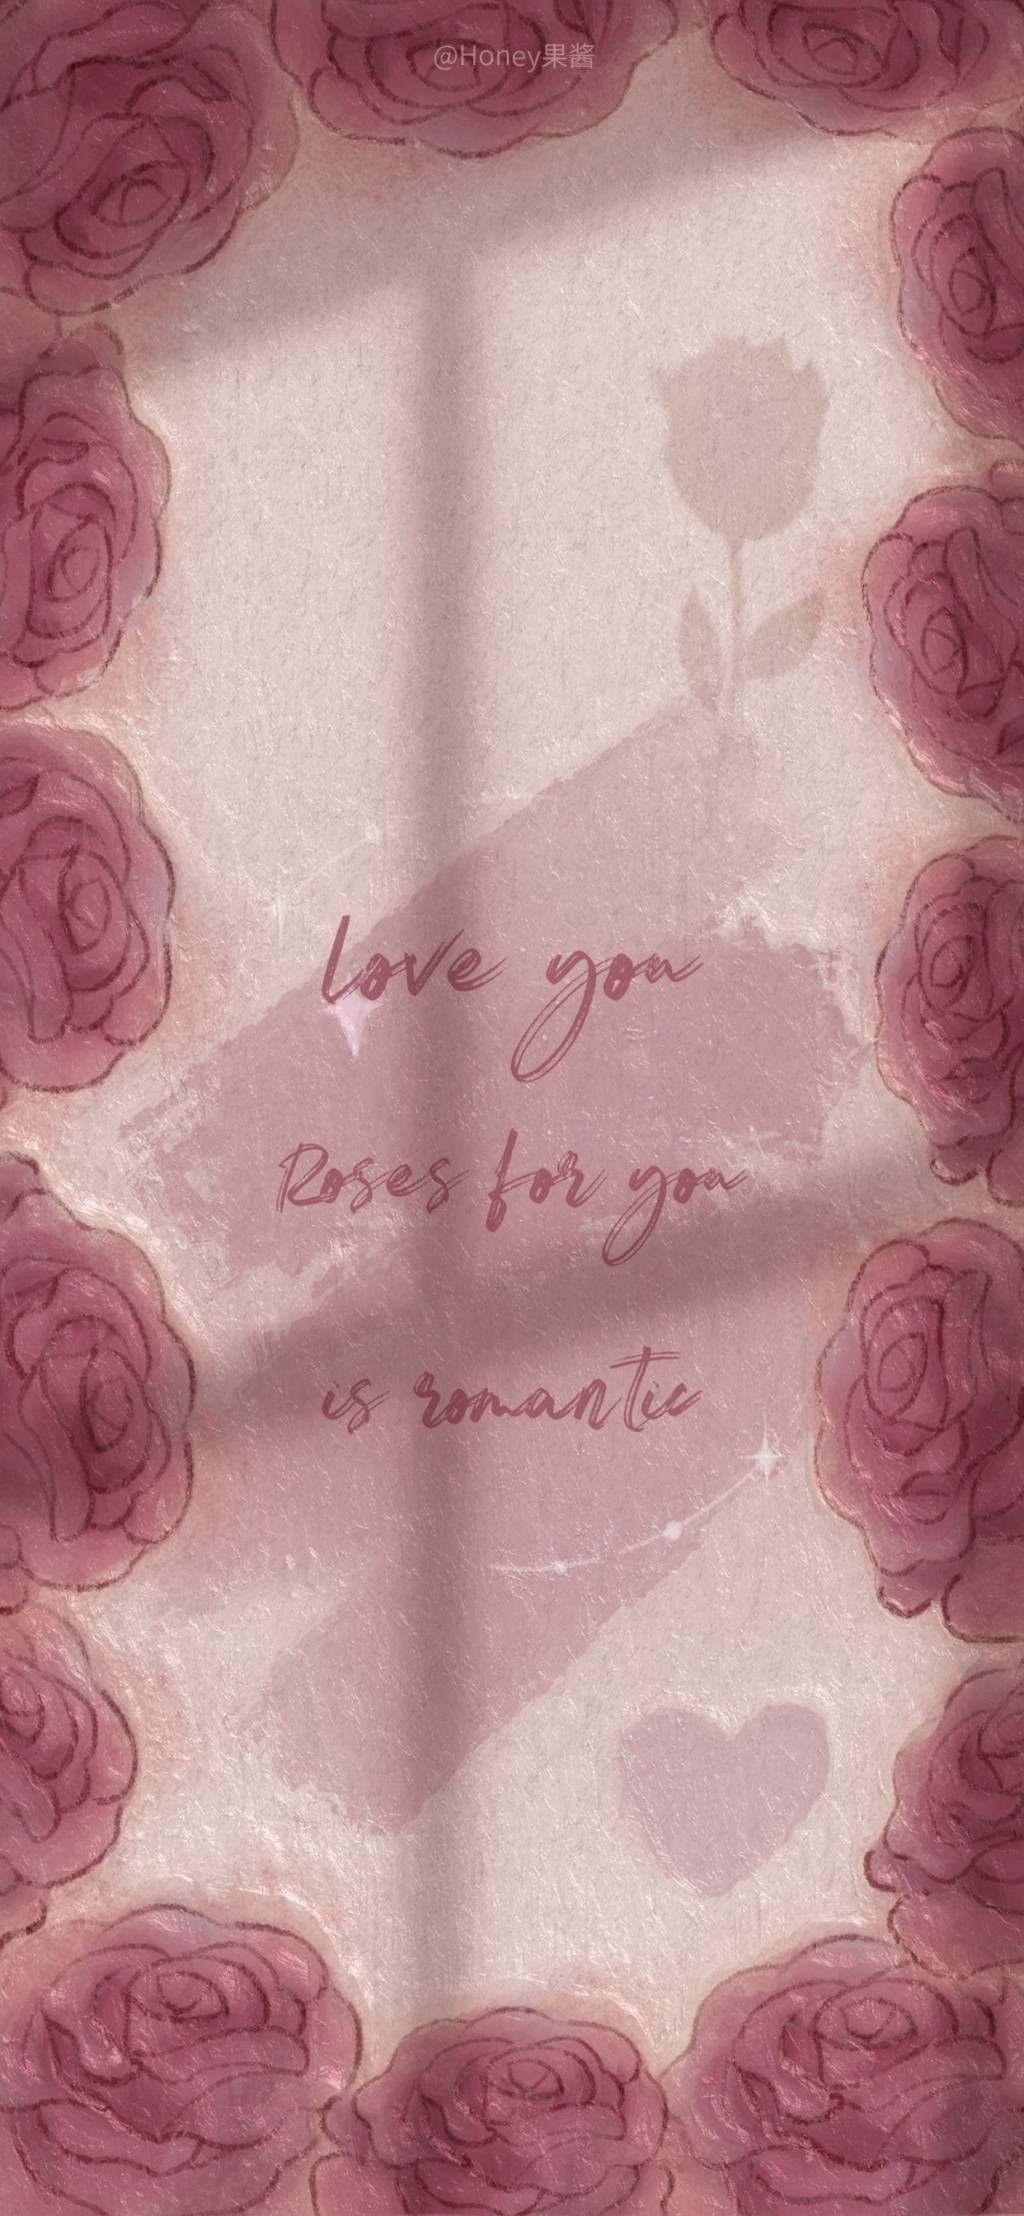 浪漫玫瑰手绘插画手机壁纸